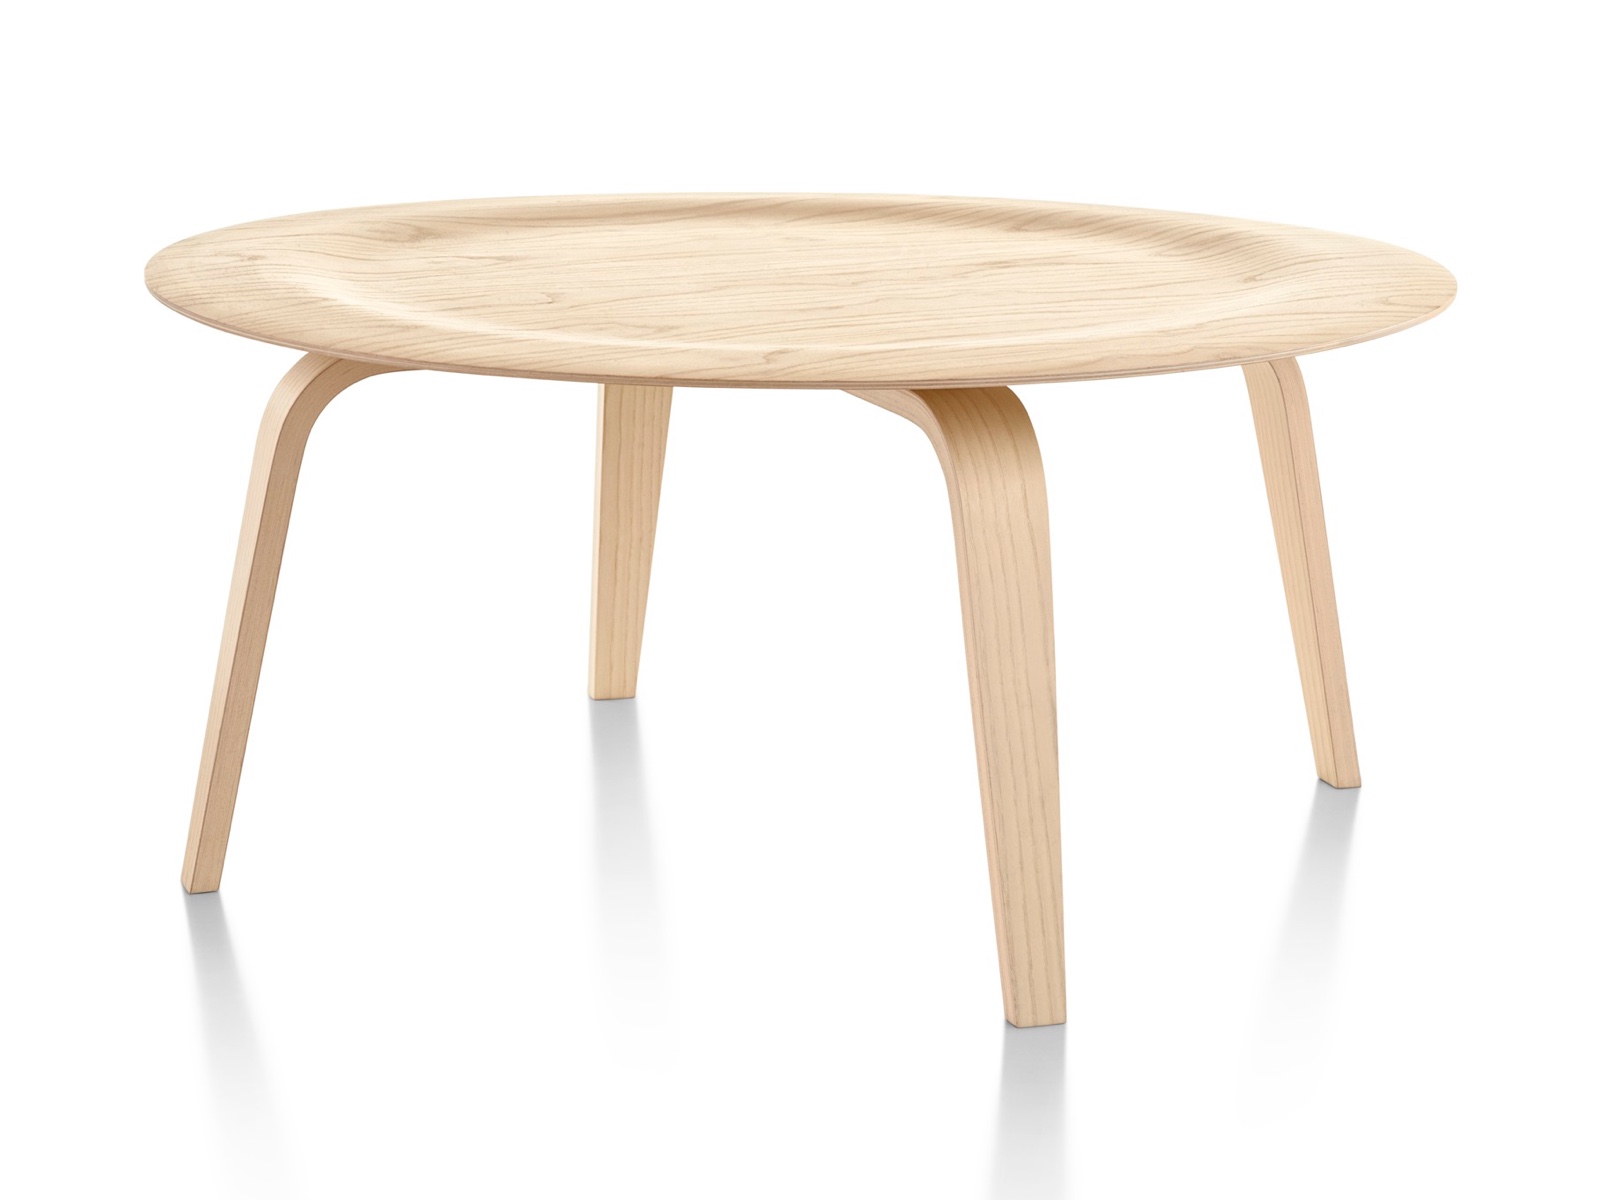 丸いEames成形された合板のコーヒーテーブルは、木の脚とインデントされたトップライト仕上げ。